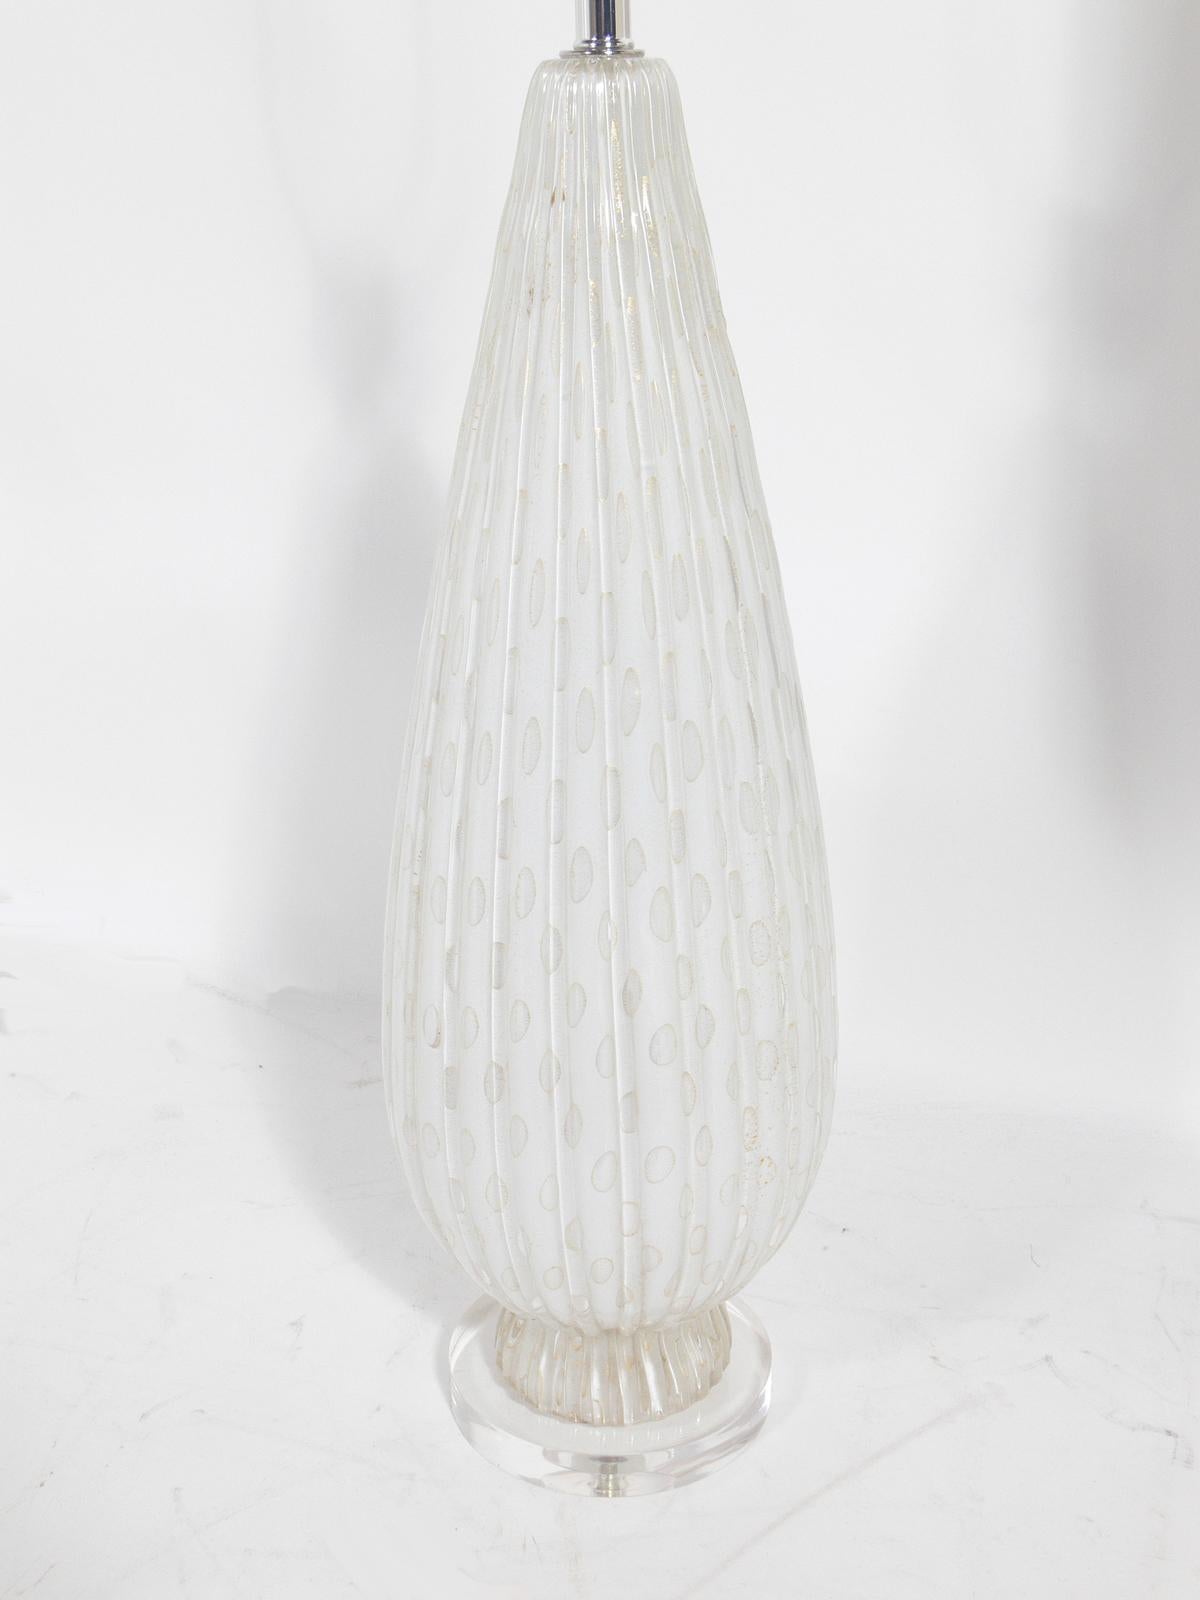 Sélection de lampes vintage en verre de Murano, Italie, vers les années 1950. Ils ont été récemment recâblés et montés sur de nouvelles bases en Lucite. Leur prix est de 850 $ chacun et l'abat-jour est inclus. La lampe illustrée à gauche est blanche